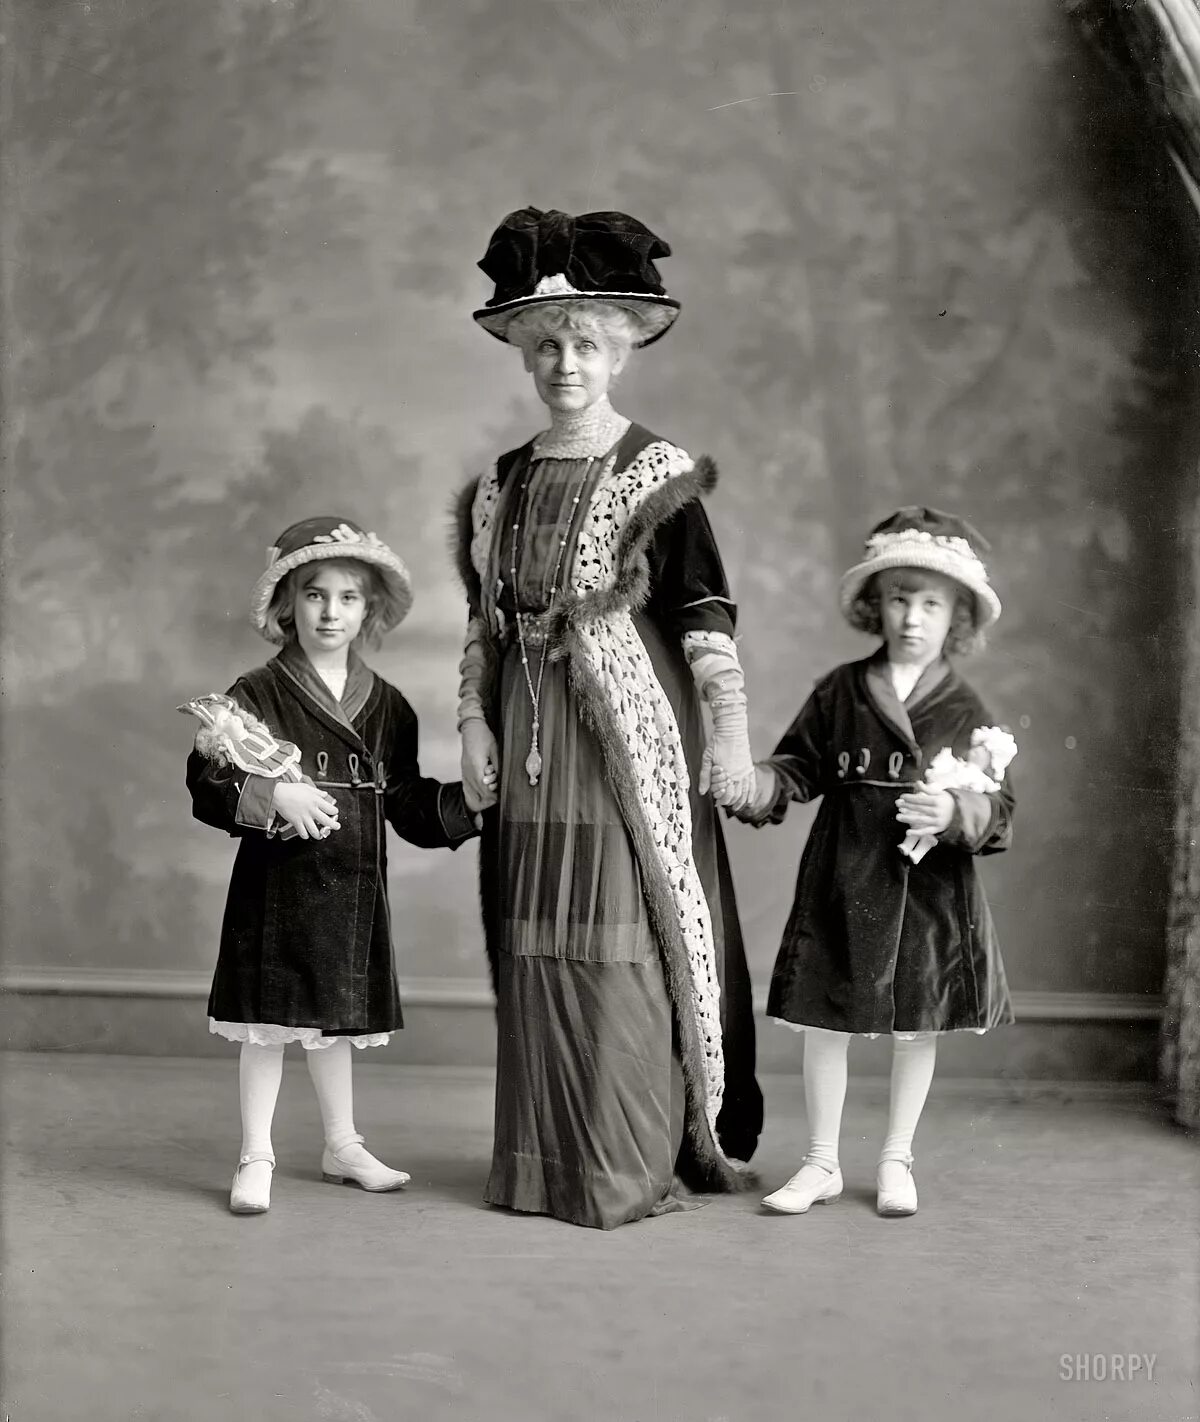 Бель Эпок эпоха. Эдвардианская мода 1910. Детская мода эдвардианской эпохи. Эдвардианская эпоха в Англии.